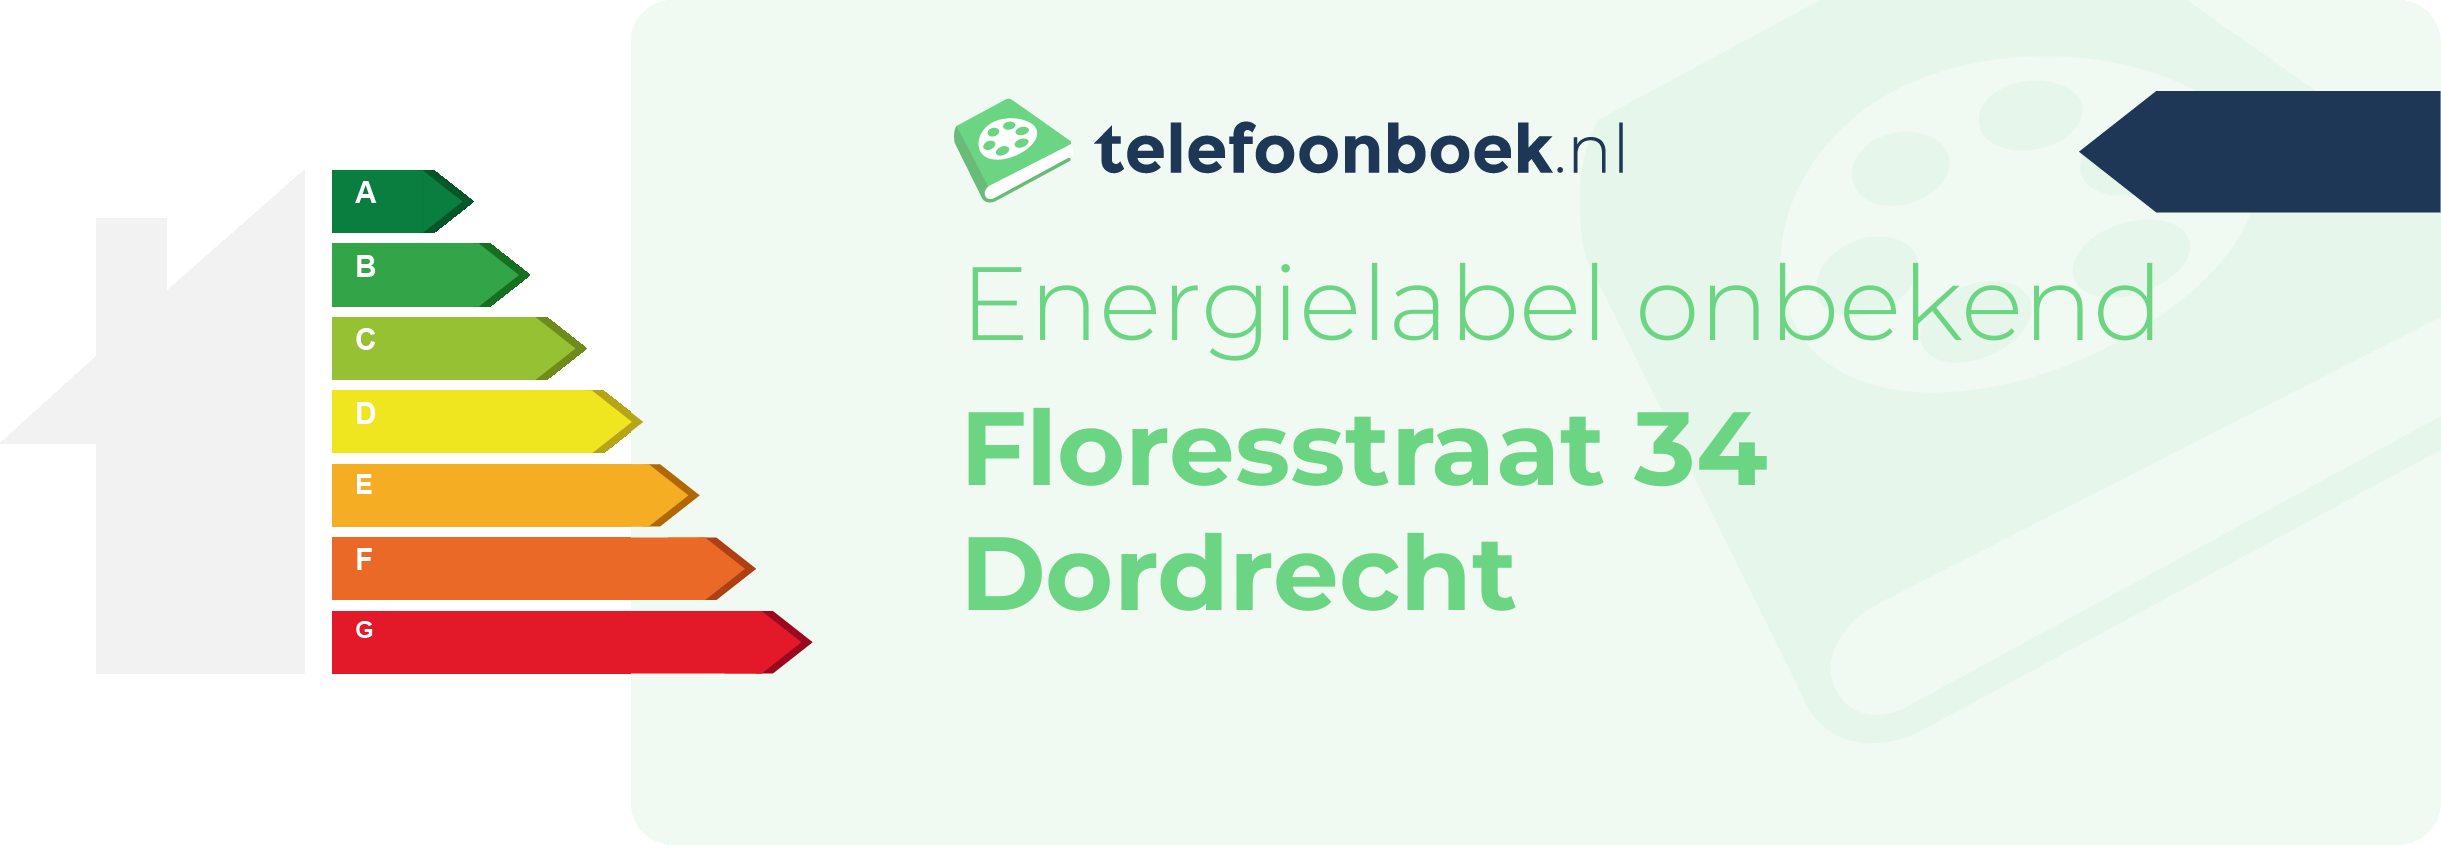 Energielabel Floresstraat 34 Dordrecht